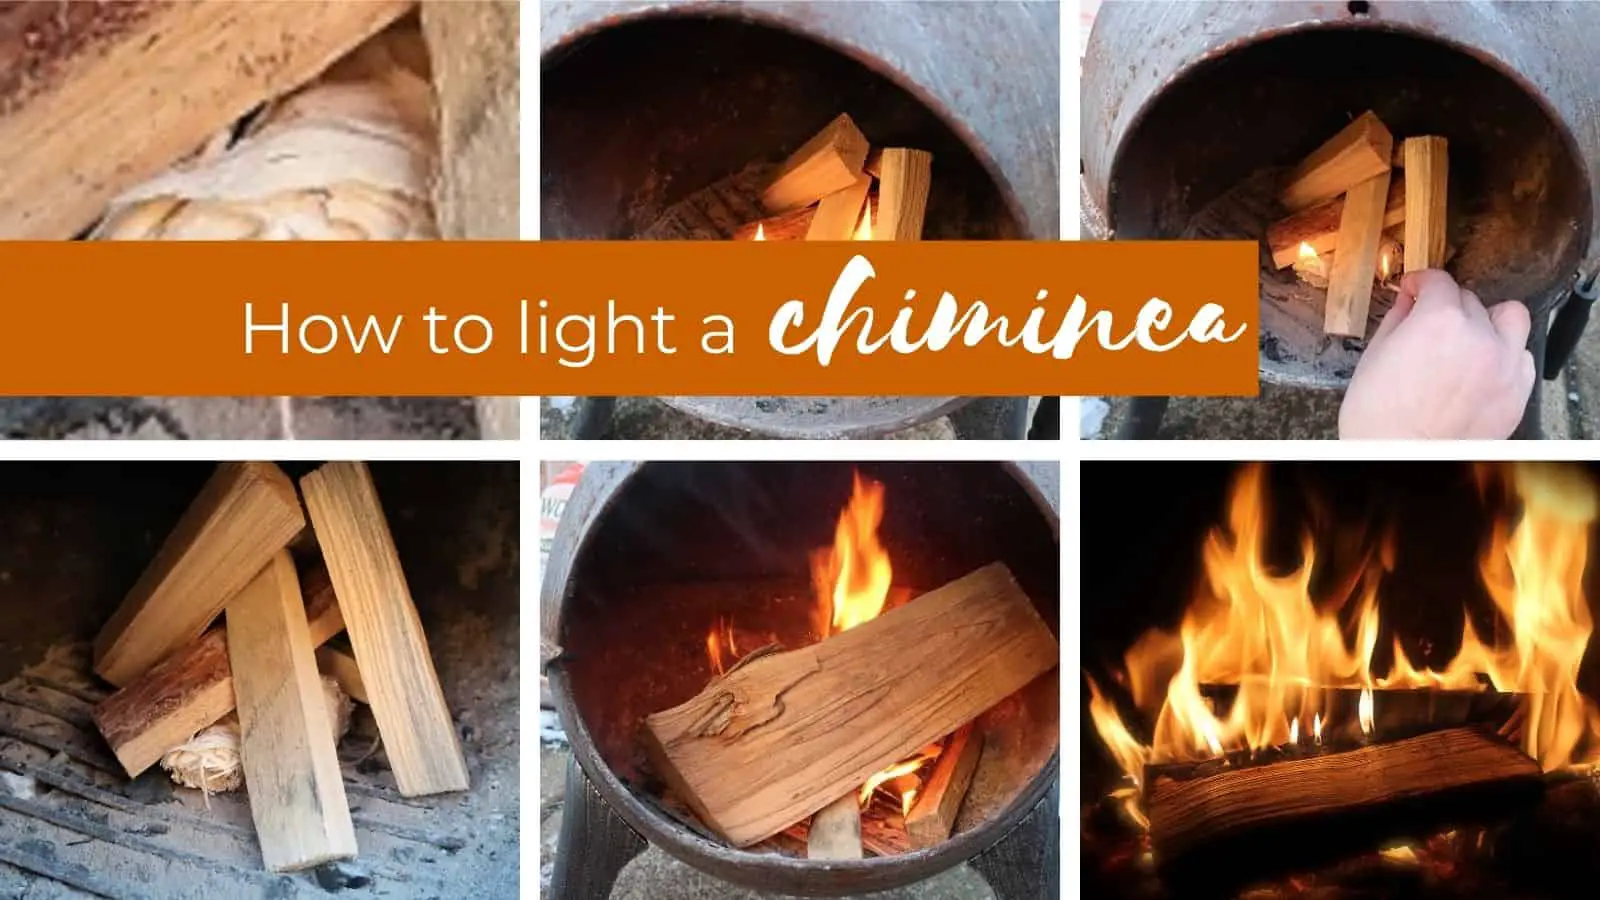 HOW TO LIGHT A CHIMINEA